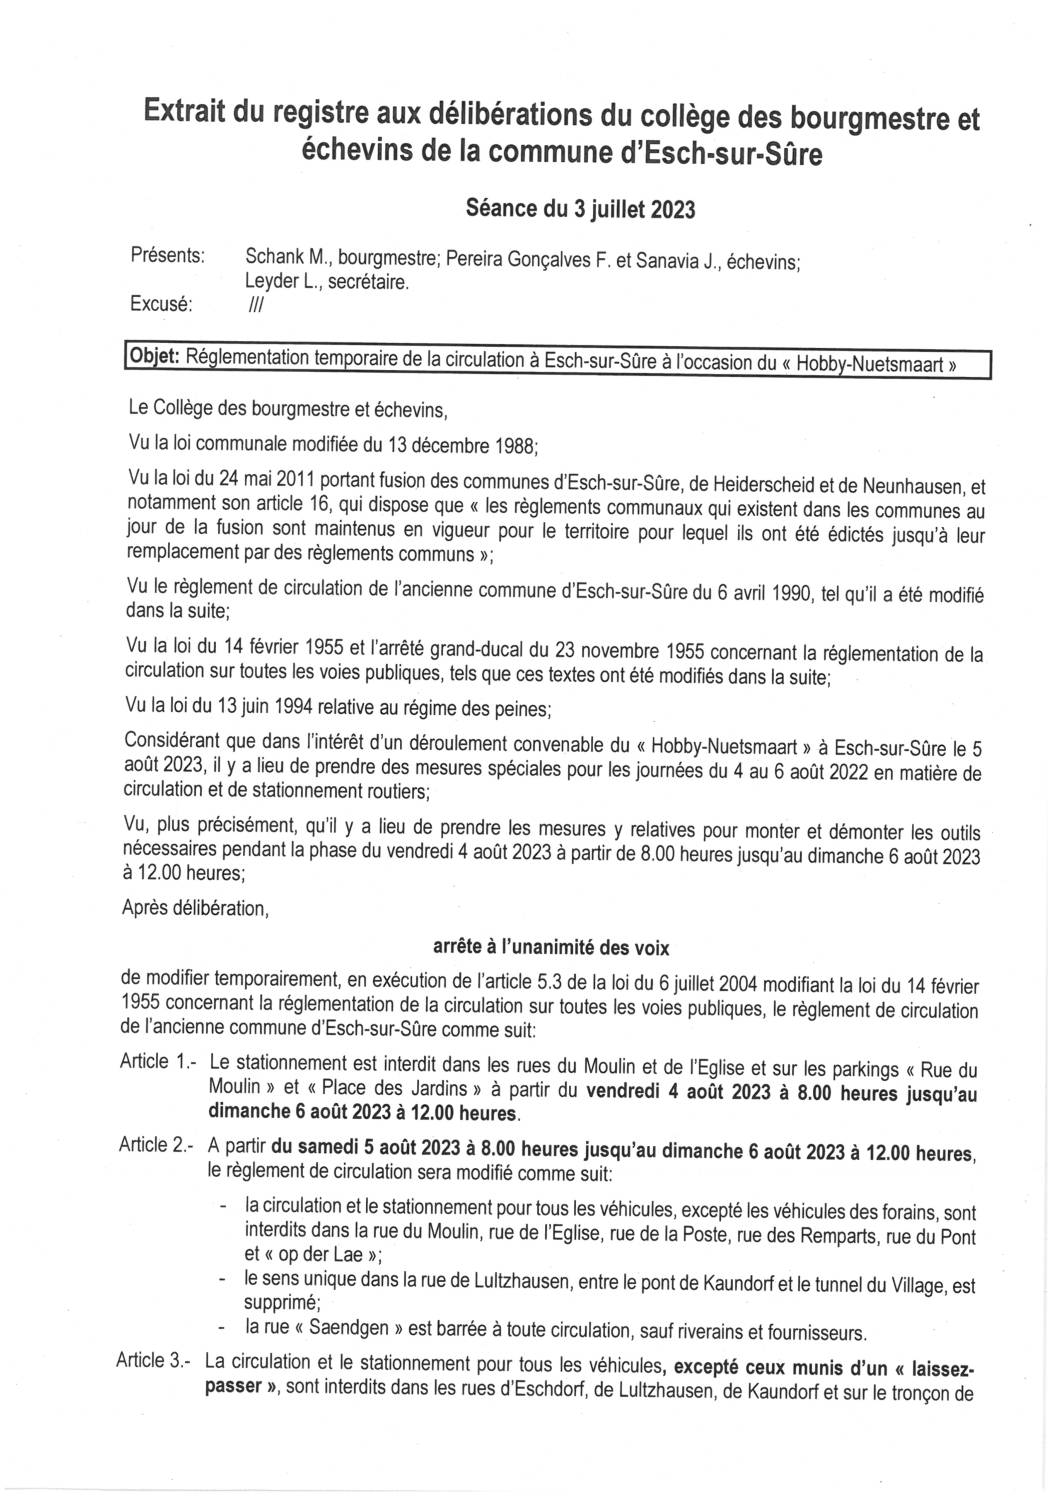 2023.07.05_Règlement temporaire de circulation à Esch-sur-Sûre à l'occasion du Hobby-Nuetsmaart